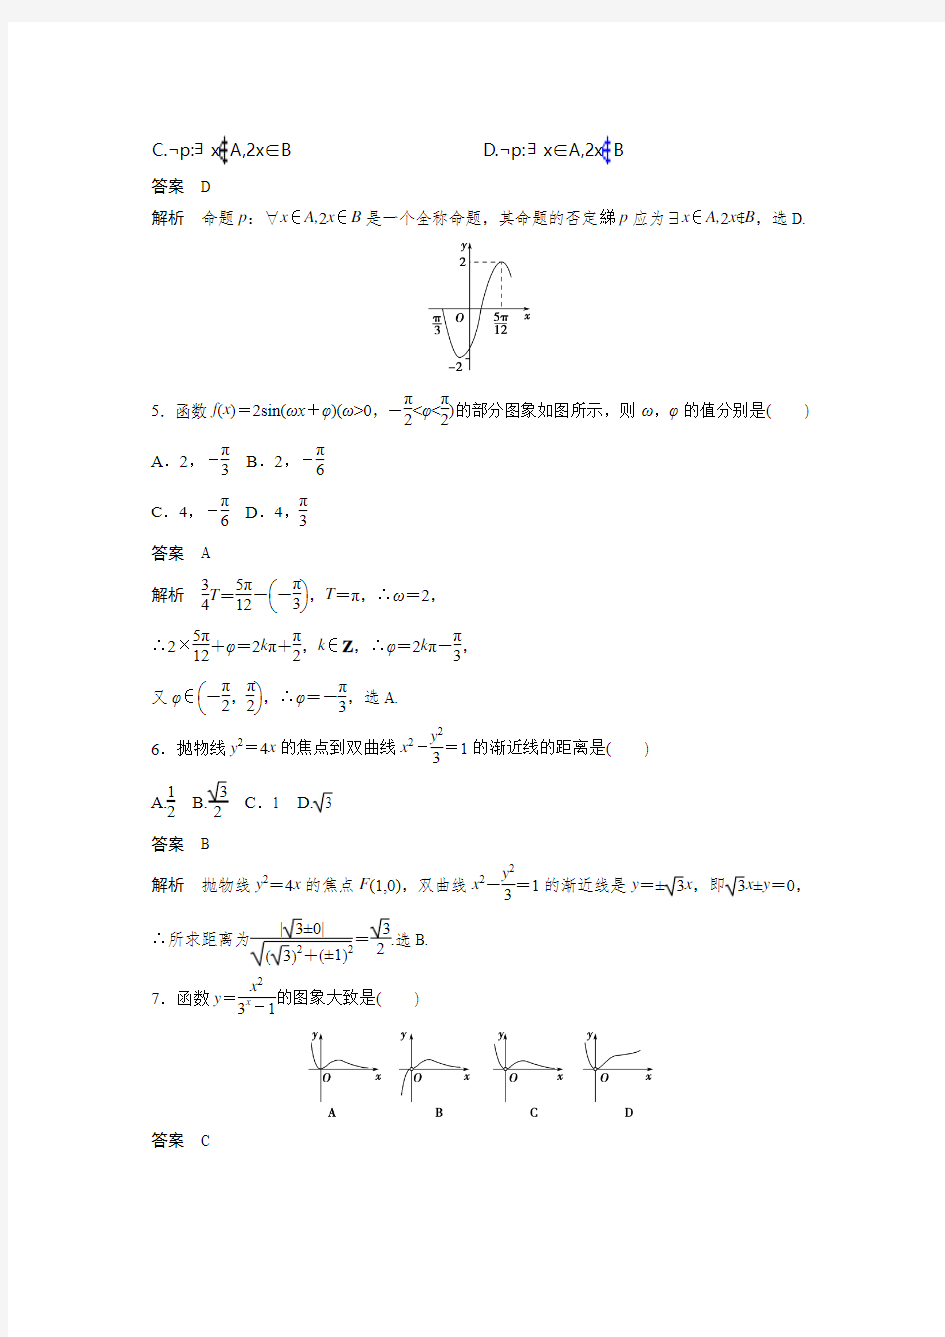 2013年高考四川卷理科数学试题及答案